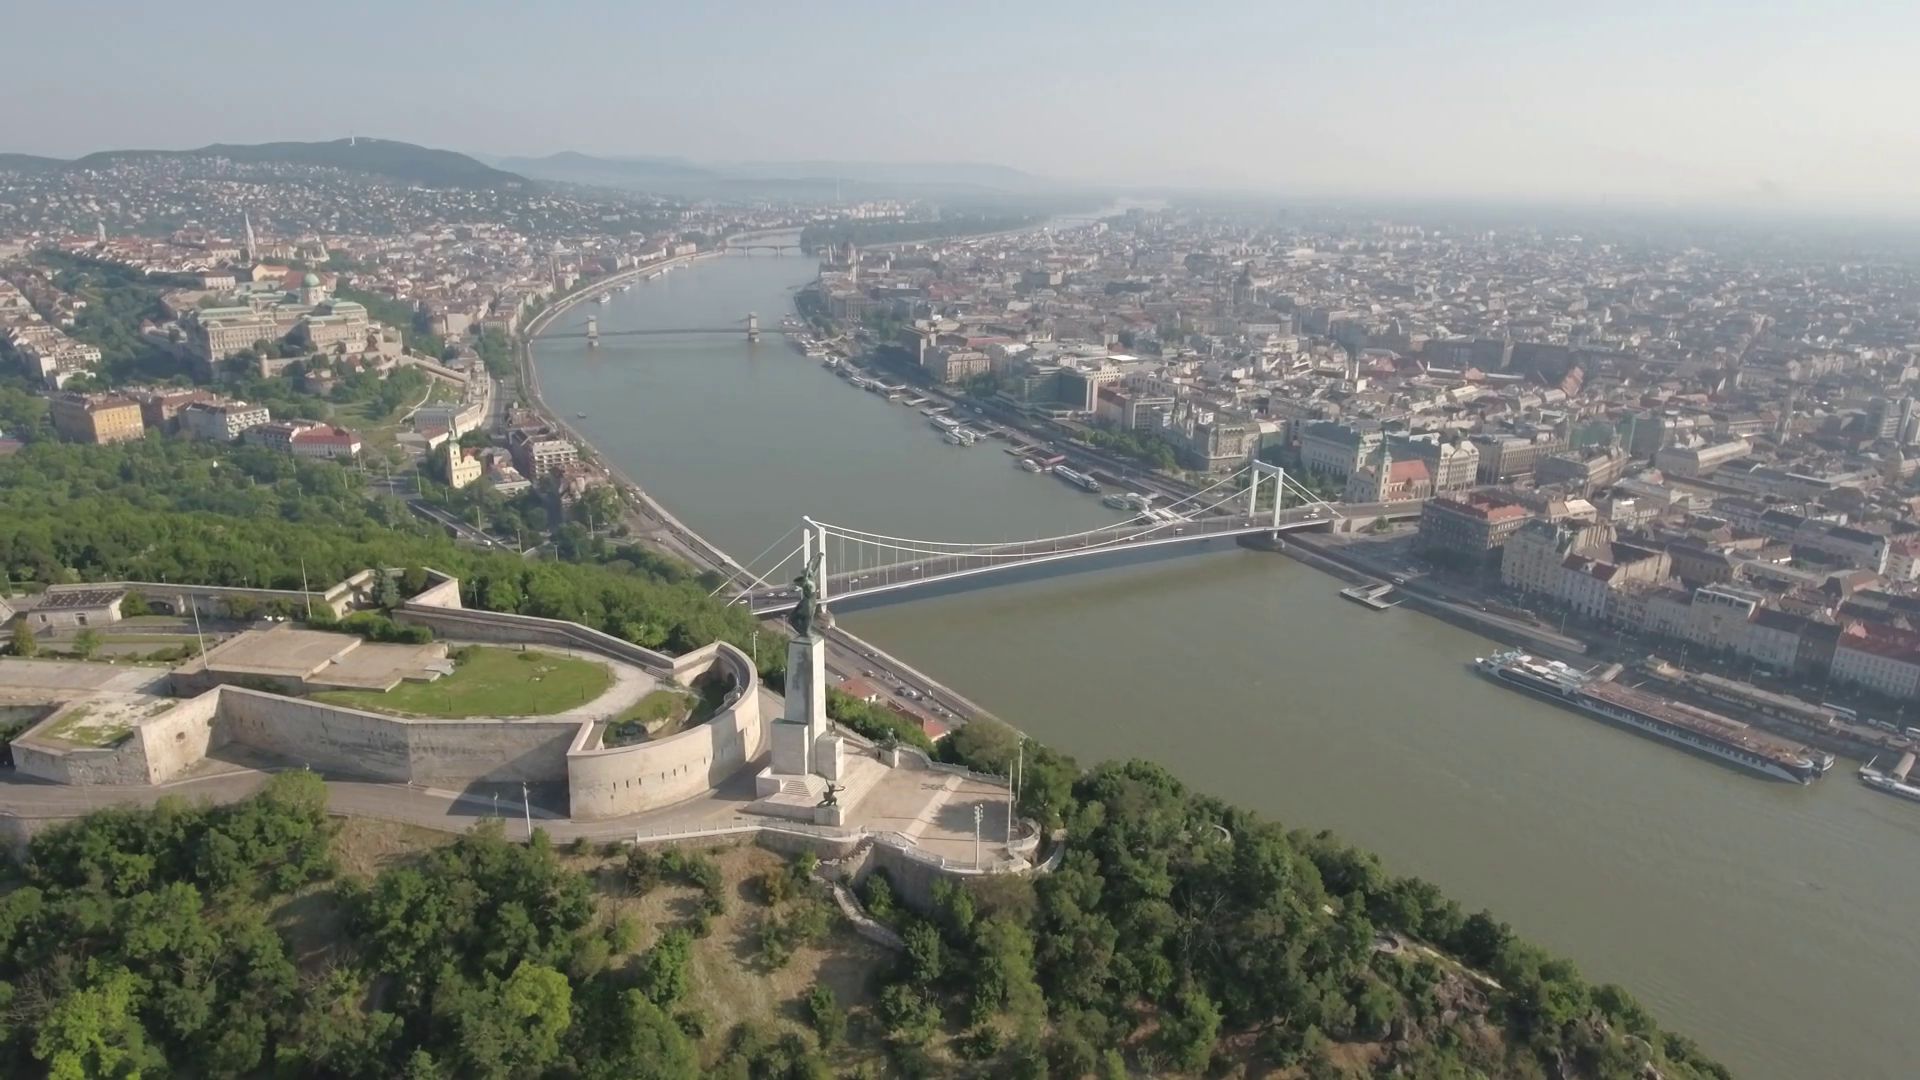 Будапеща - един от символните градове на Централна Европа, преливащ от история, забележителности и със свой собствен дух и очарование. Градът е част от Евро 2020.